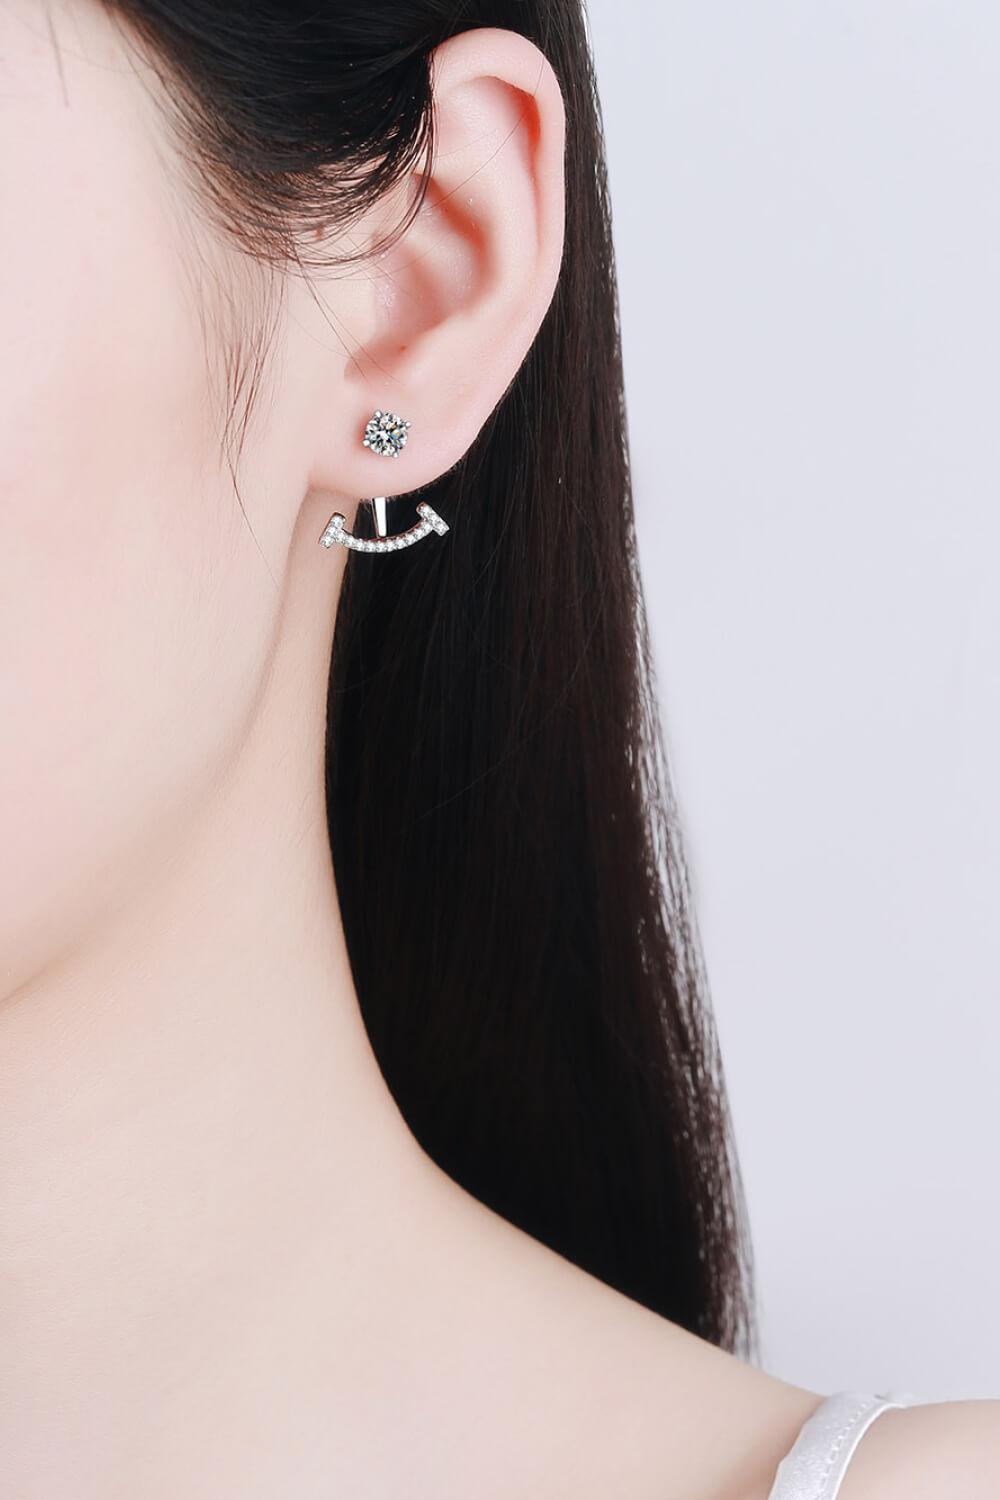 Two Ways To Wear Moissanite Earrings - Flyclothing LLC